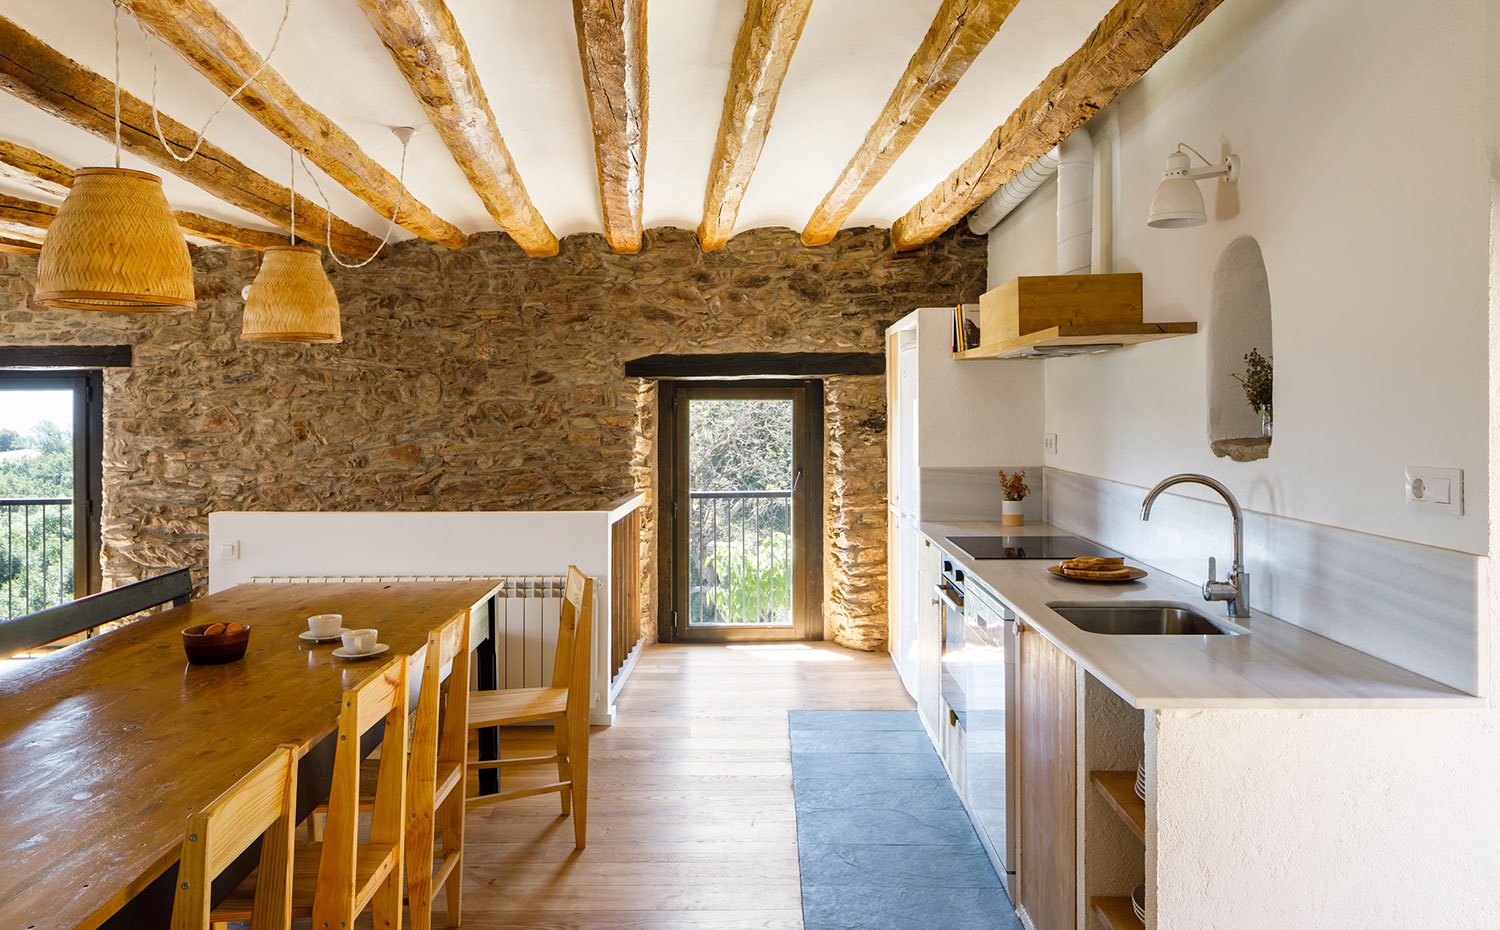 Comedor y cocina abierta en un mismo espacio con vigas de madera, luminarias suspendidas de fibras naturales y pared de piedra